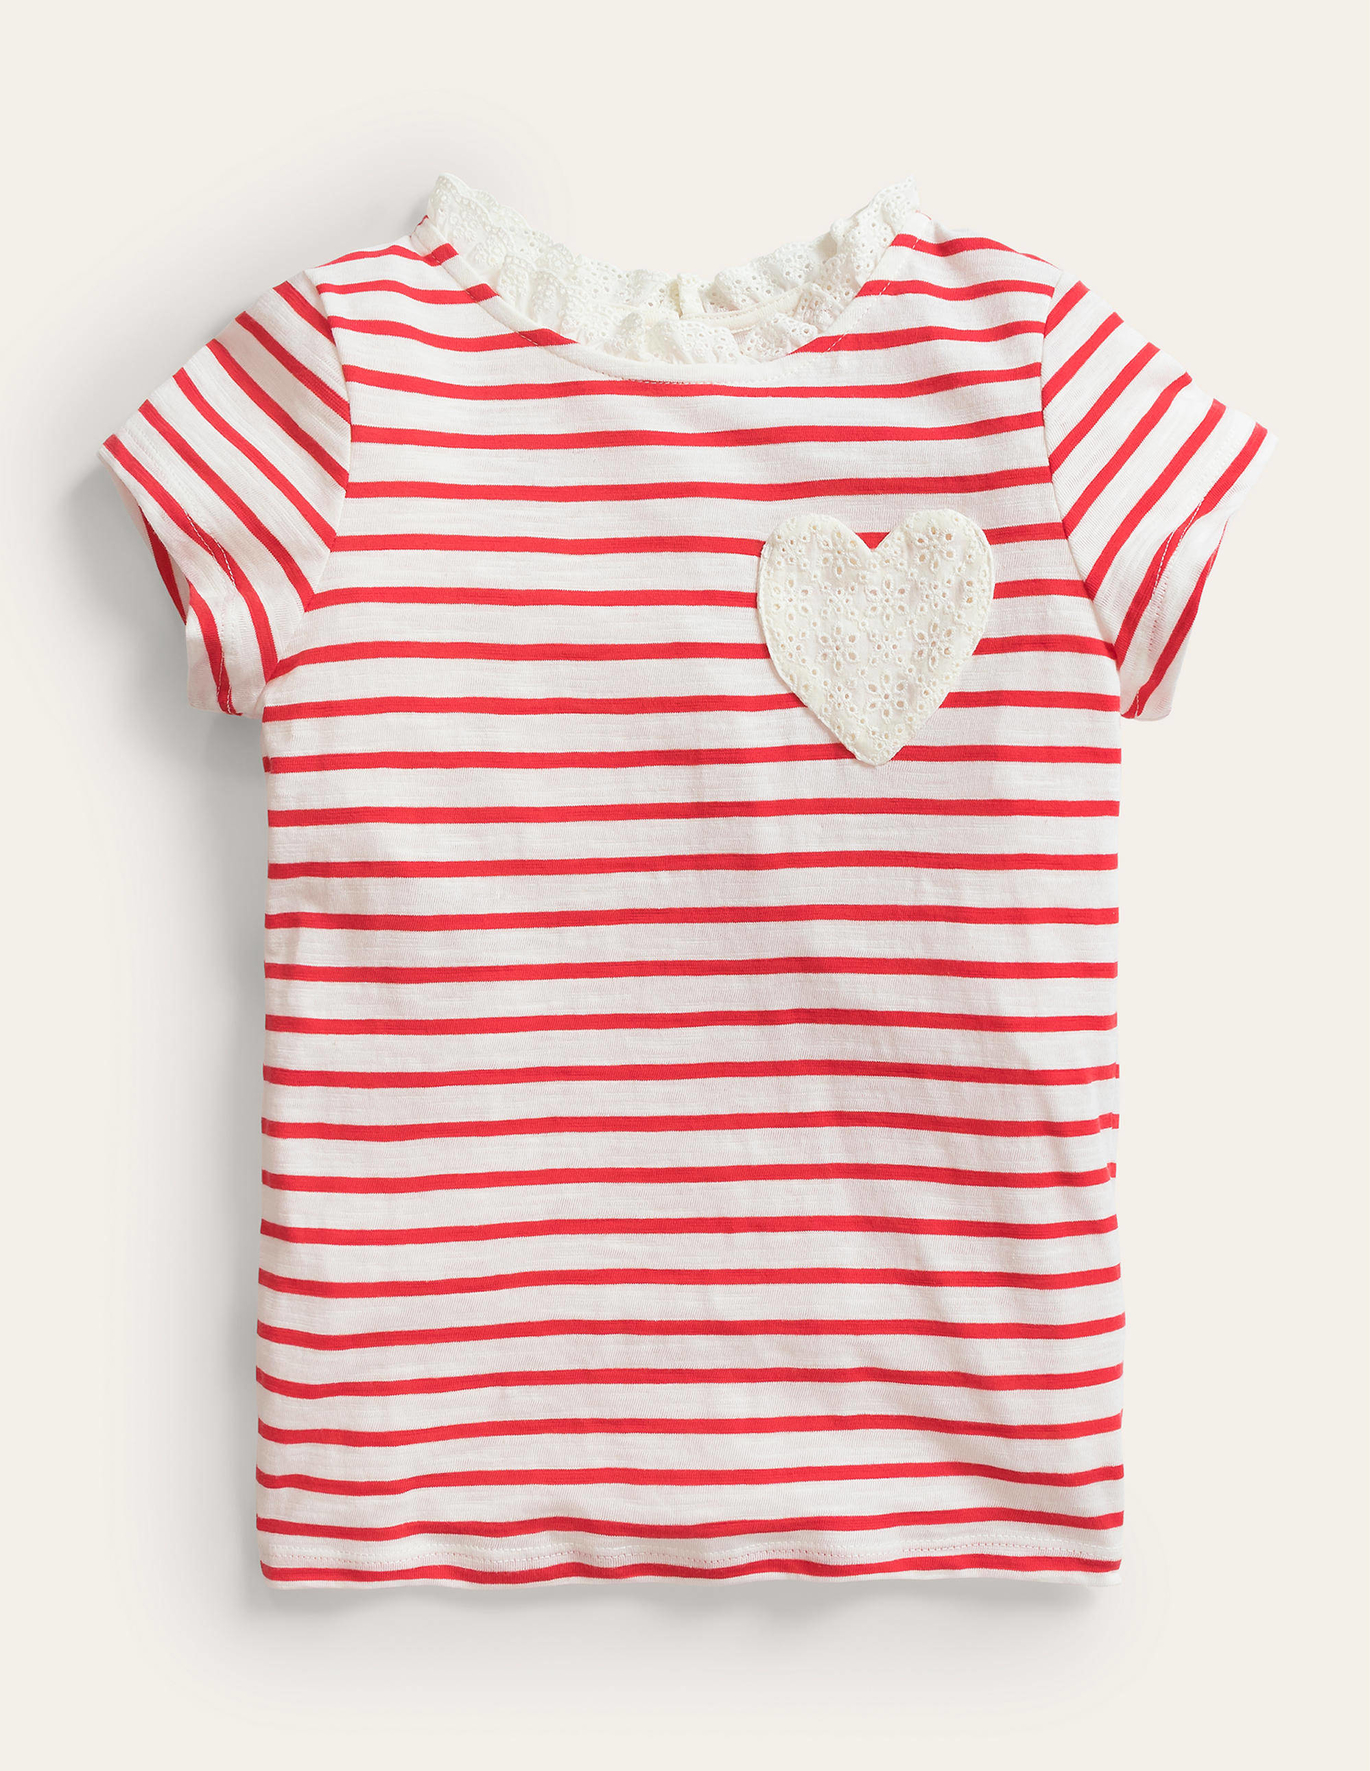 Boden Broderie Pocket T-shirt - Strawberry Tart/Ivory